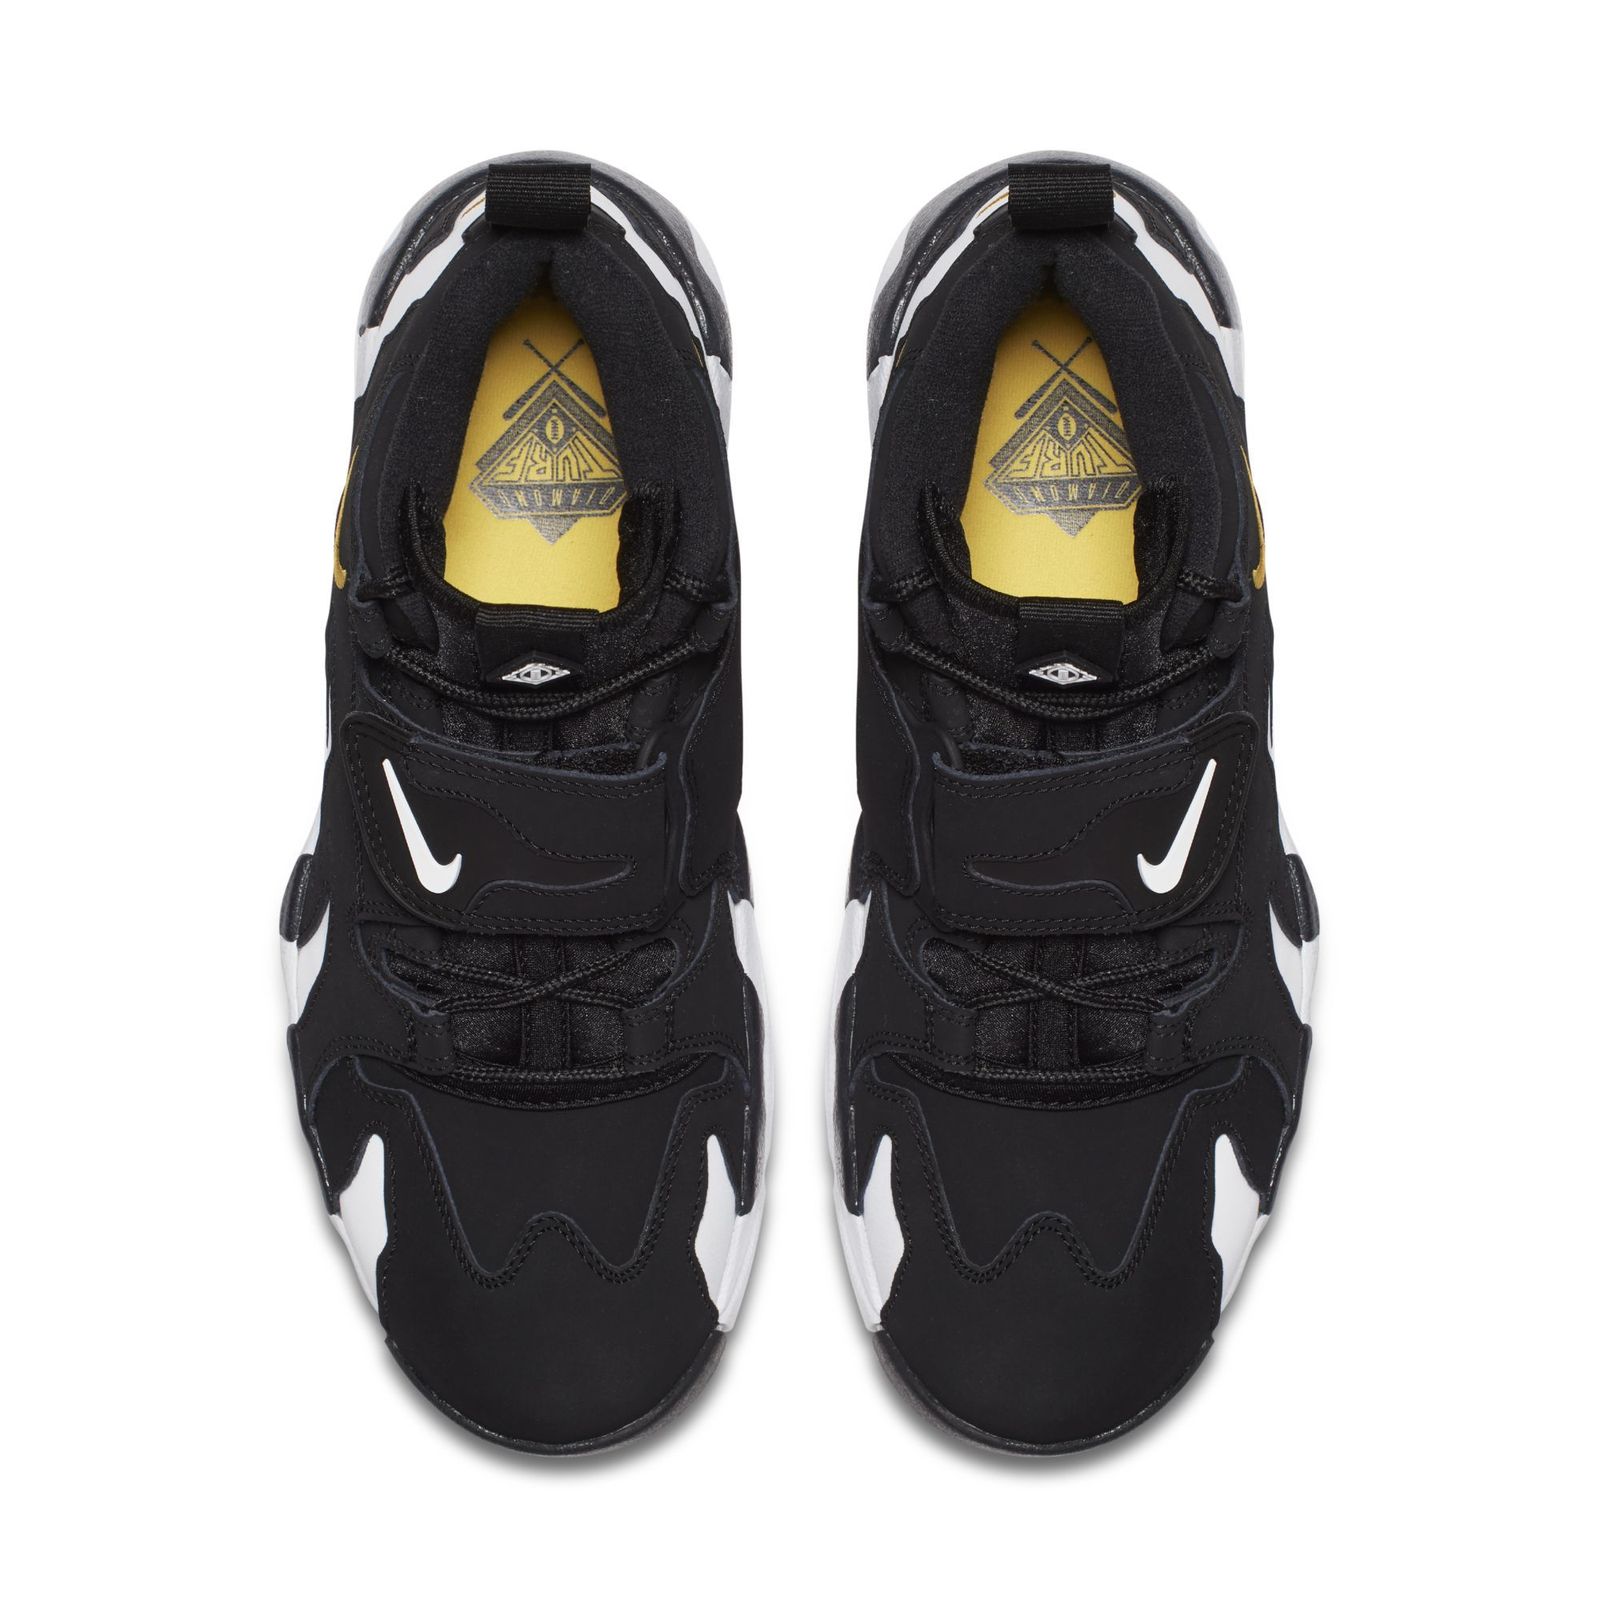 Nike Brings Back the Air DT Max 96 - Sneaker Freaker